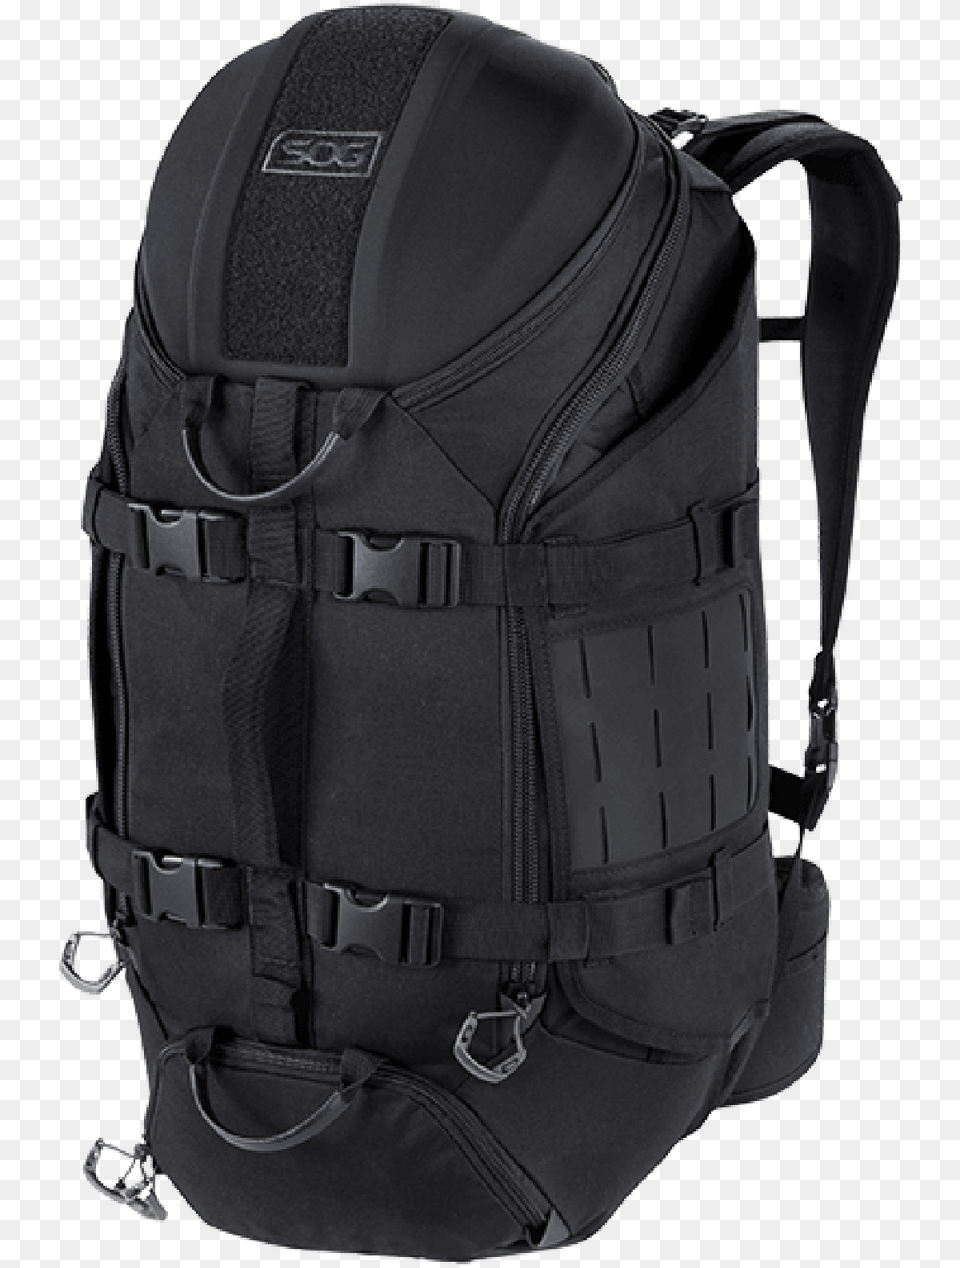 Sog Prophet 33 Backpack 33l Duffle Bag Padded Shoulder Backpack Png Image